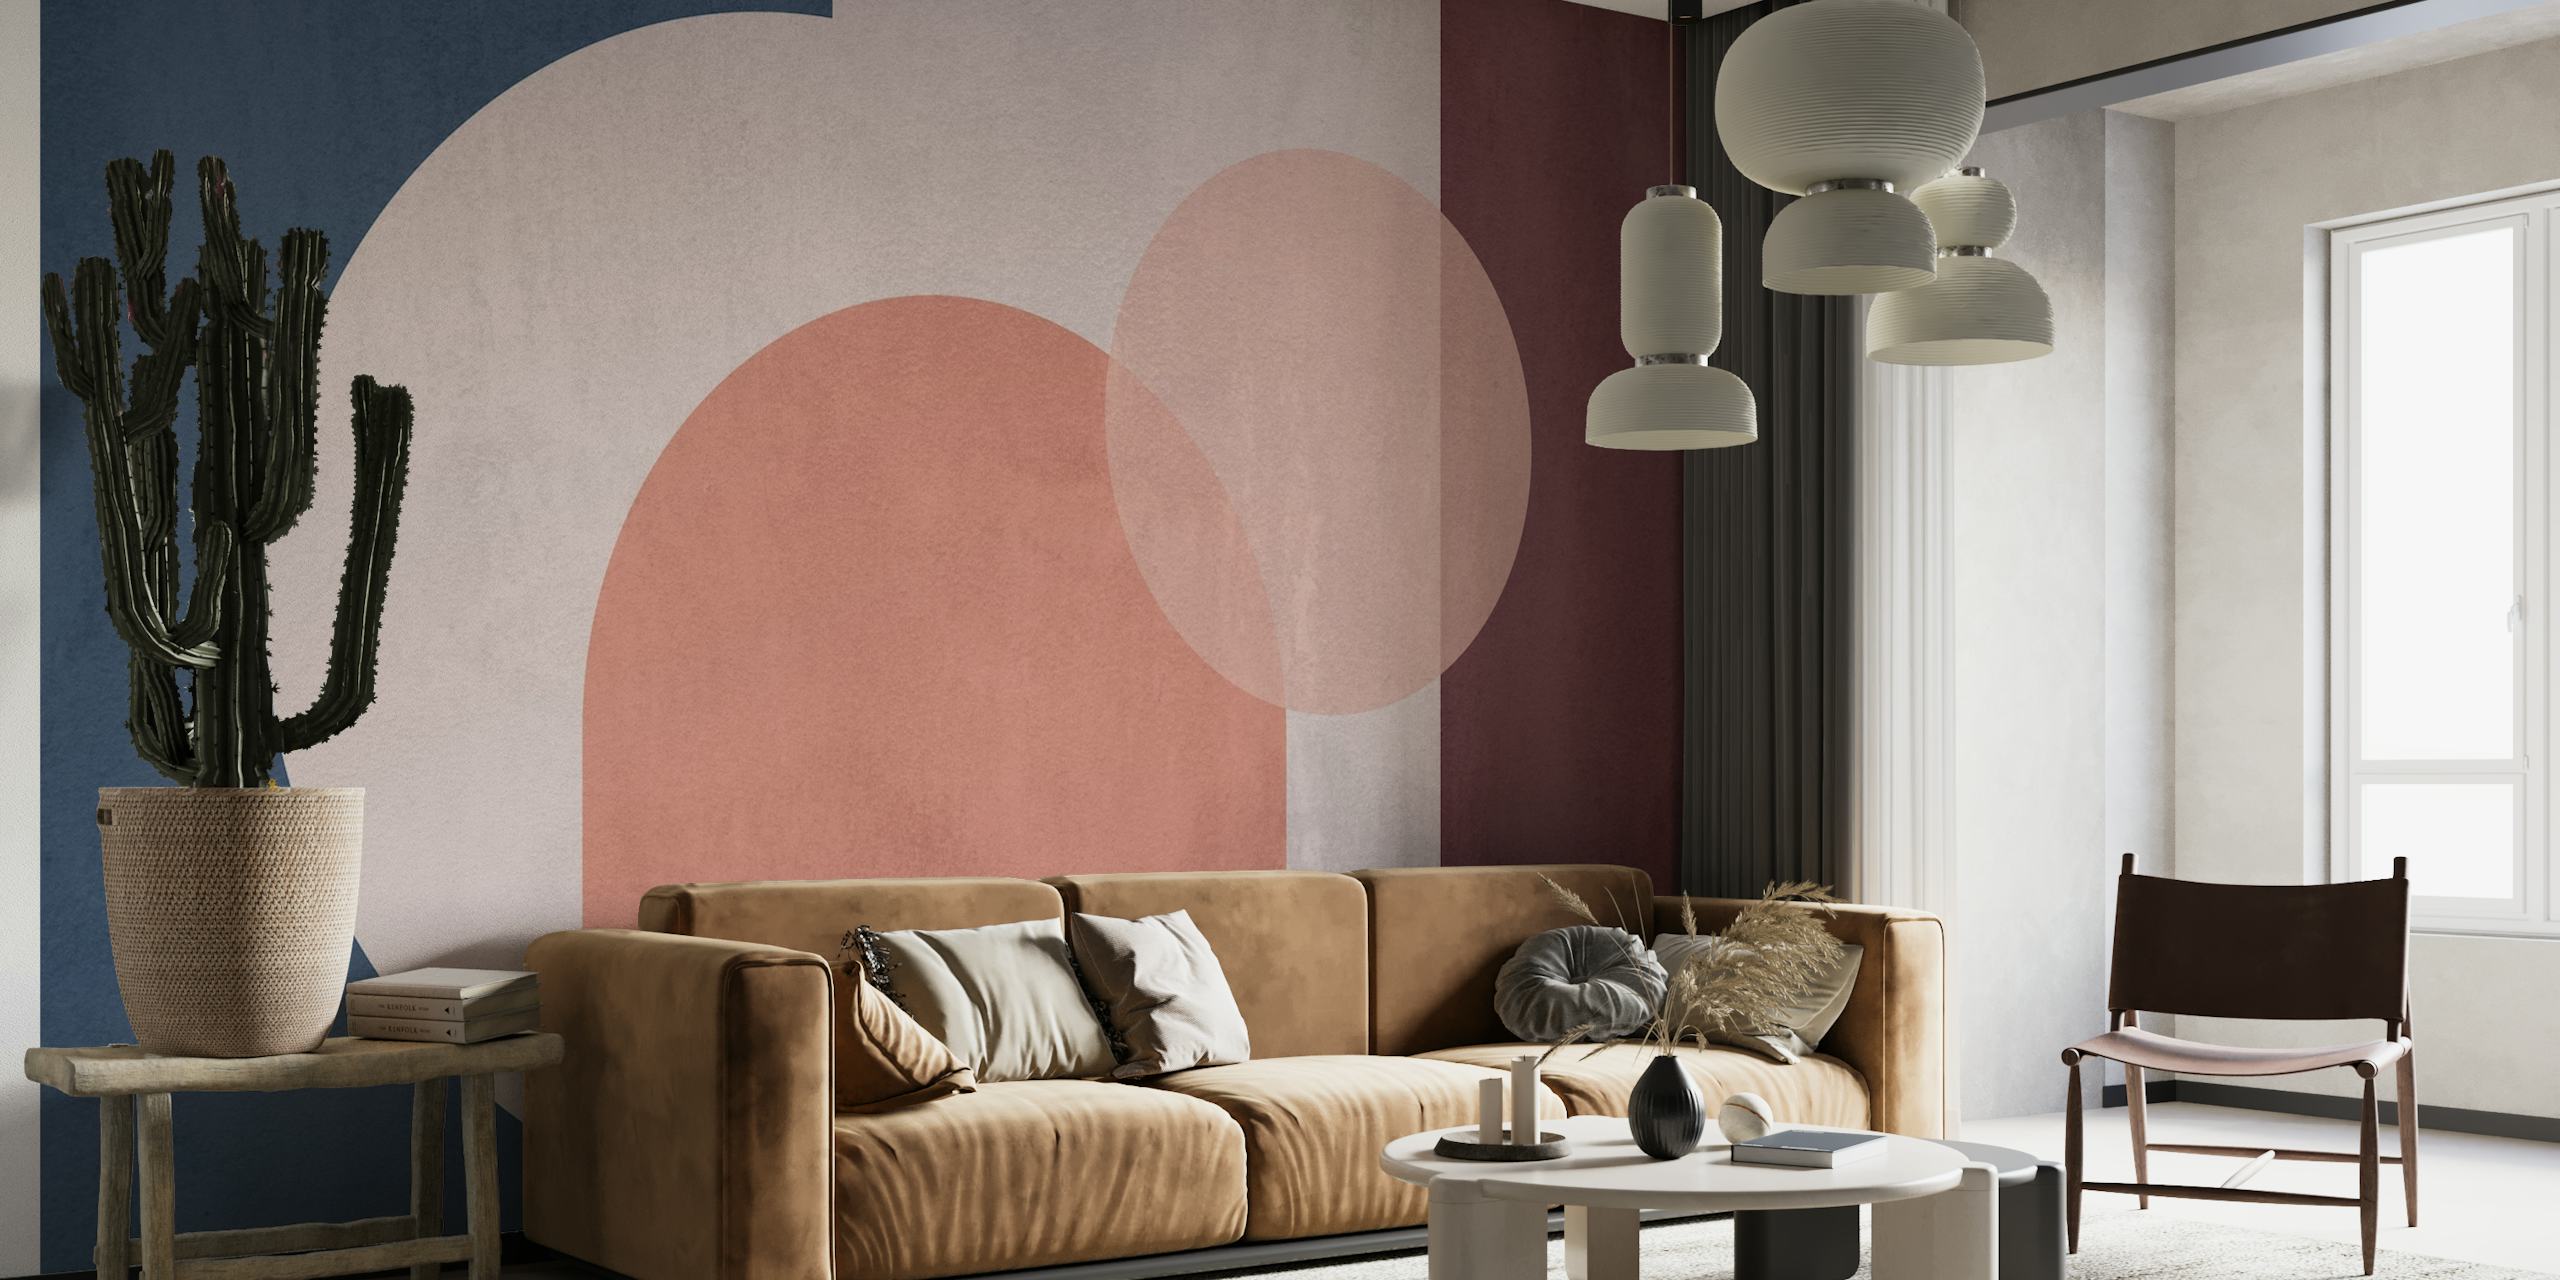 Abstracte geometrische muurschildering van zacht cement in de kleuren blauw, roze en bordeaux